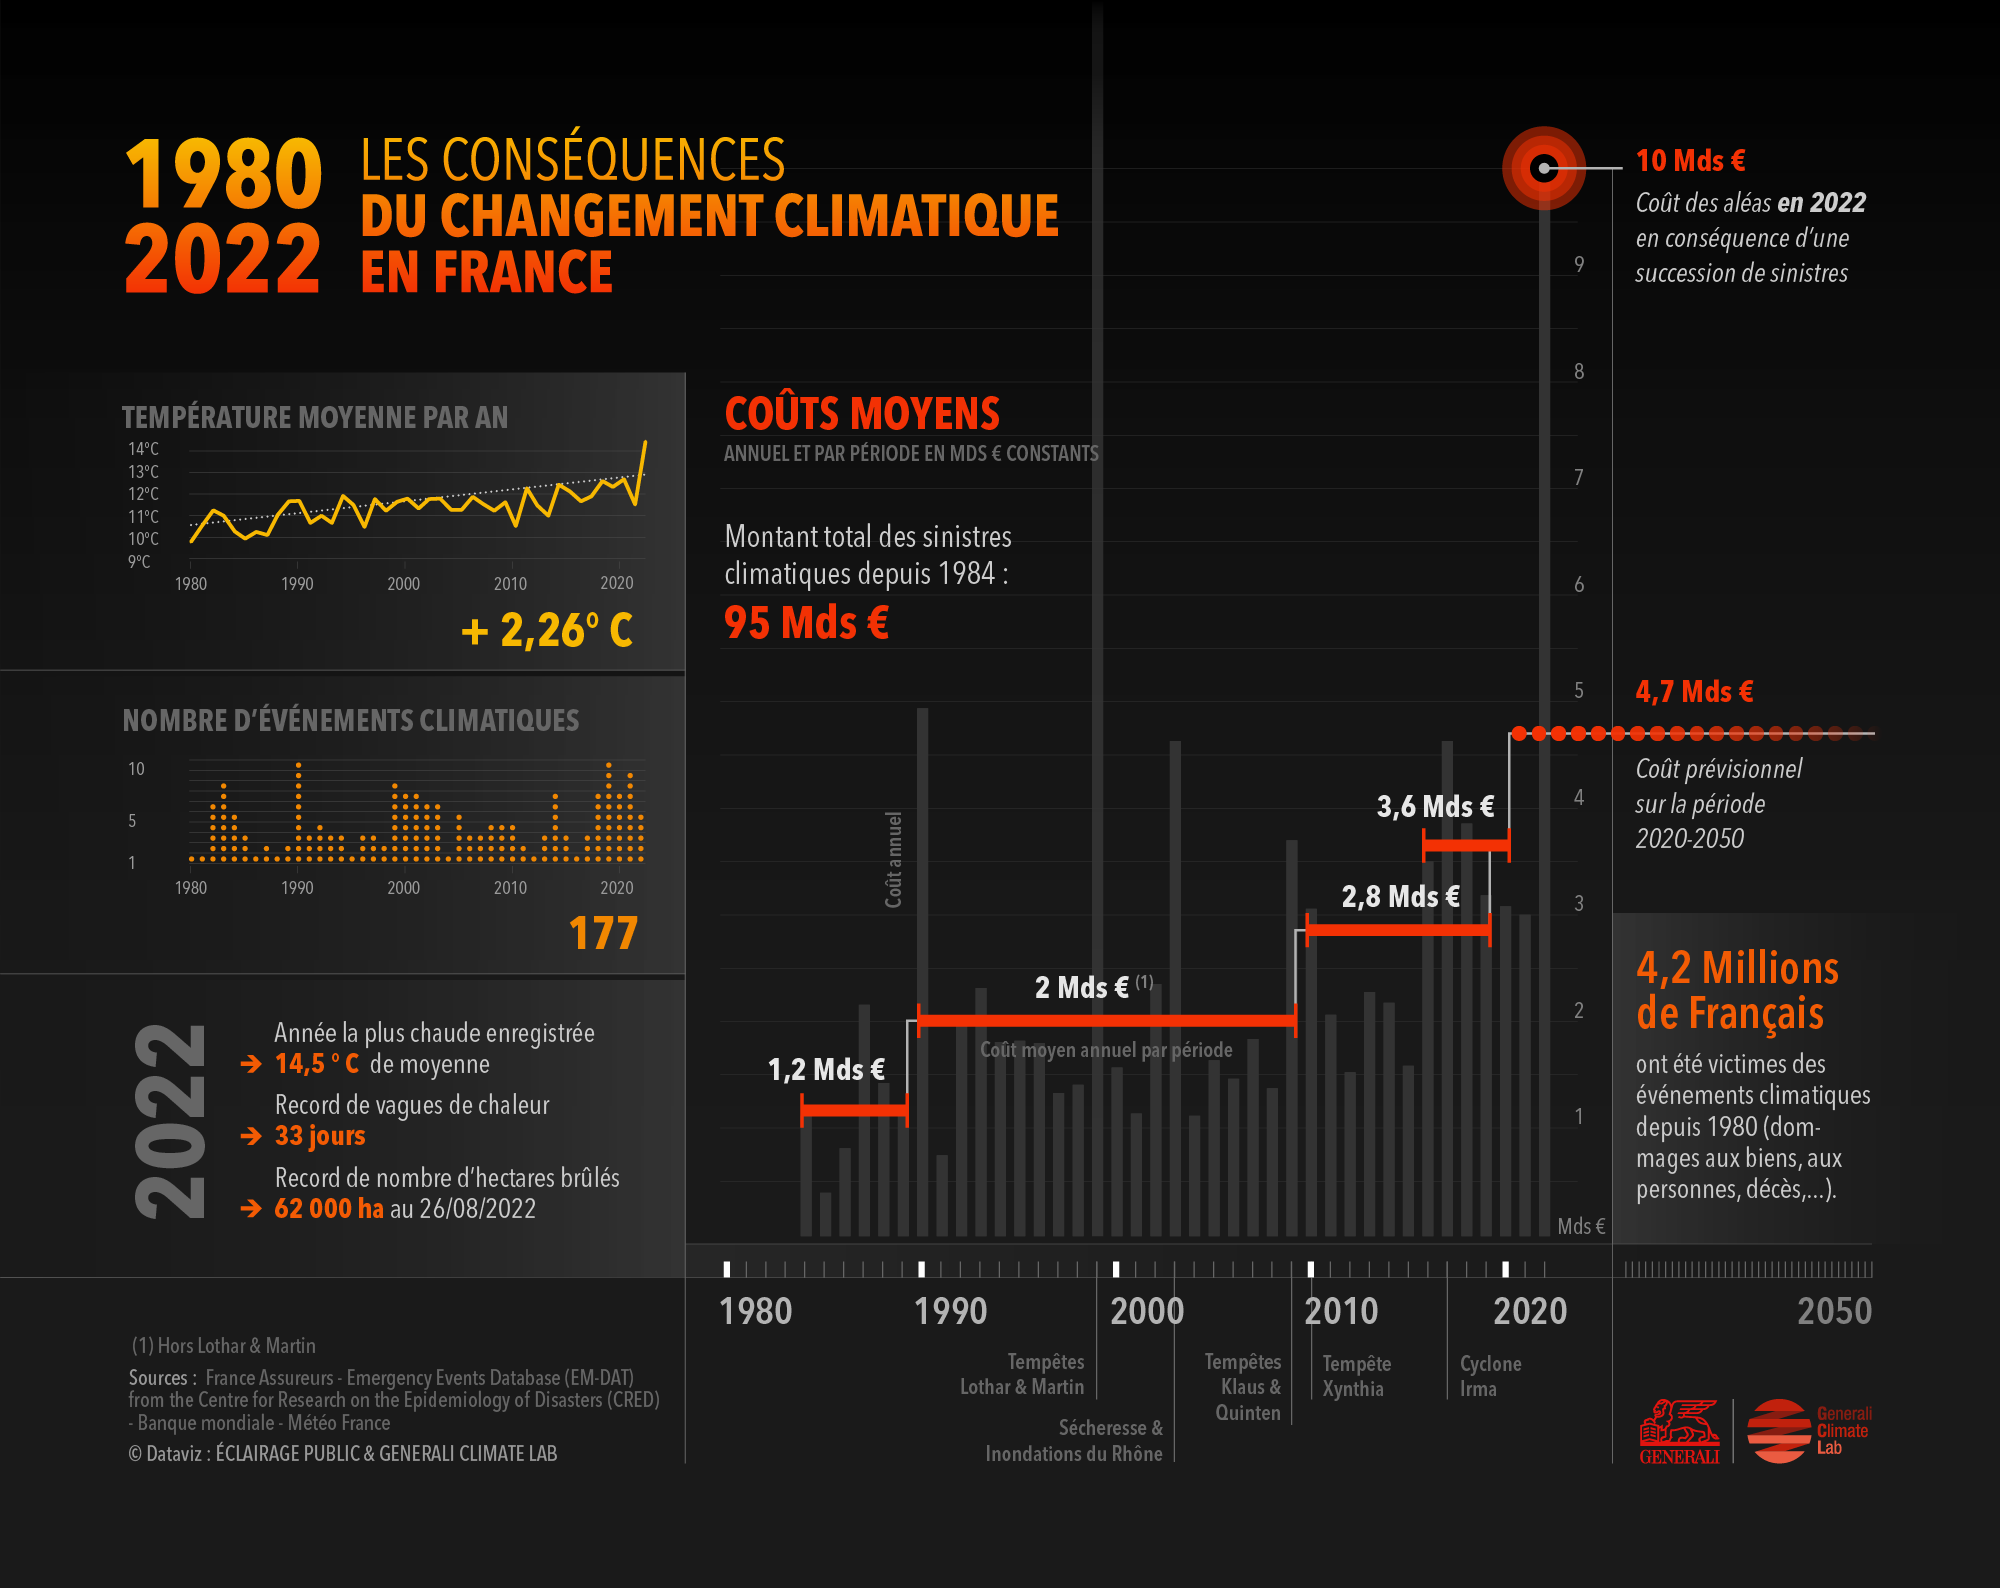 France-Cout-Changement-Climat-Assurances-GENERALI-dataviz-ECLAIRAGE-PUBLIC-2000